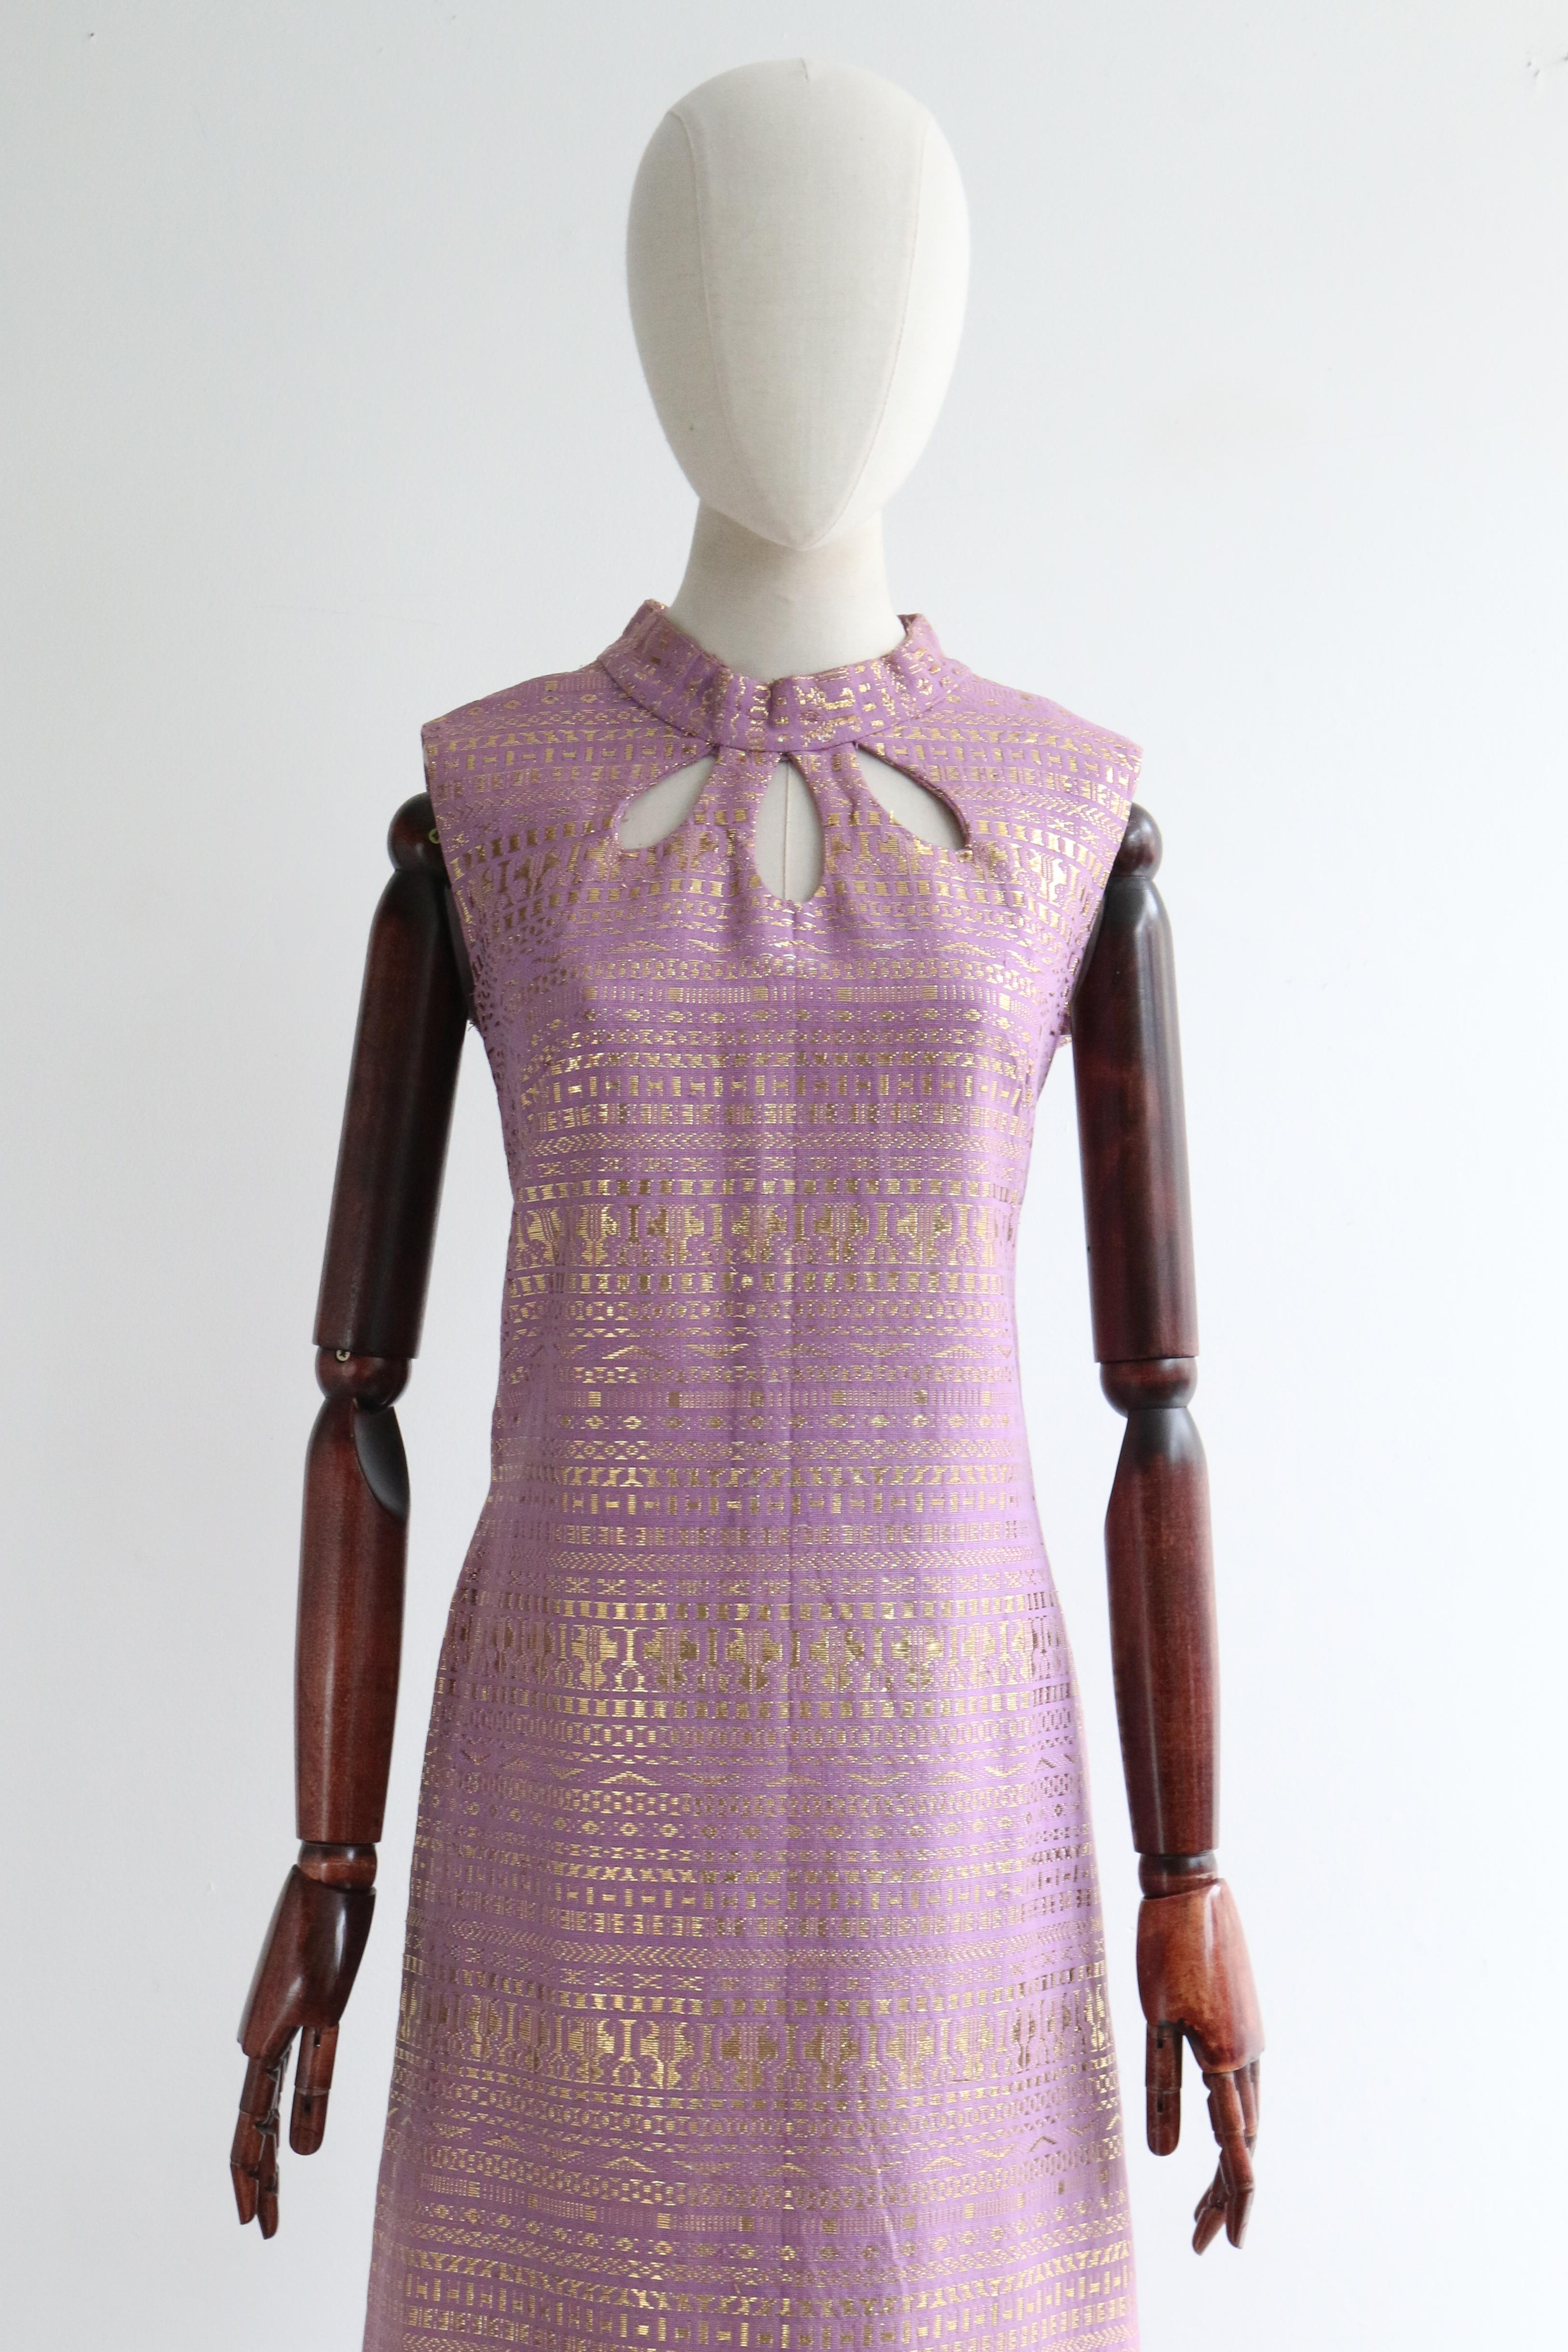 Eine klassische Silhouette in fliederfarbenem Baumwollgewebe mit geometrischem Webmuster aus goldenen Lurexfäden - dieses auffällige Kleid aus den 1960er Jahren ist genau das Richtige für Ihre Cocktailgarderobe.  

Der stilisierte abgerundete